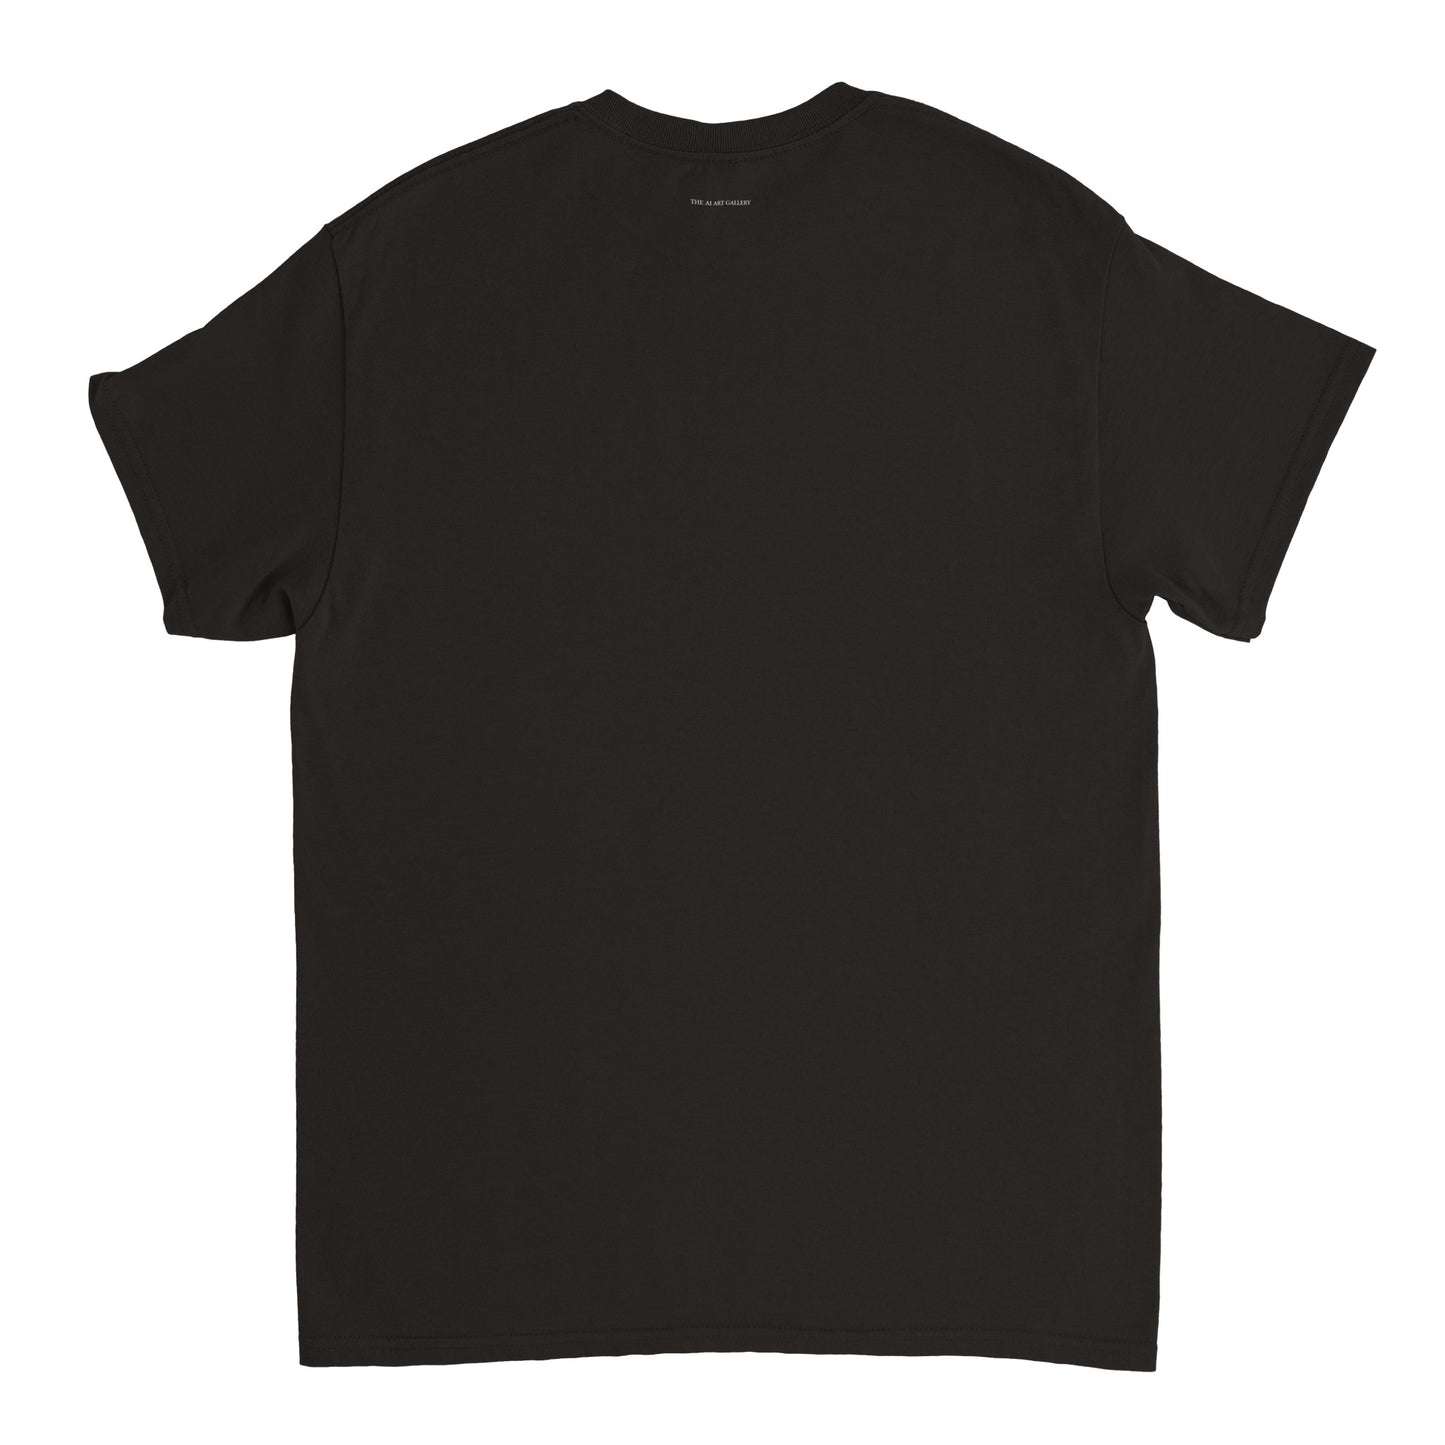 duobus coloribus / SS23 / T-shirt / black